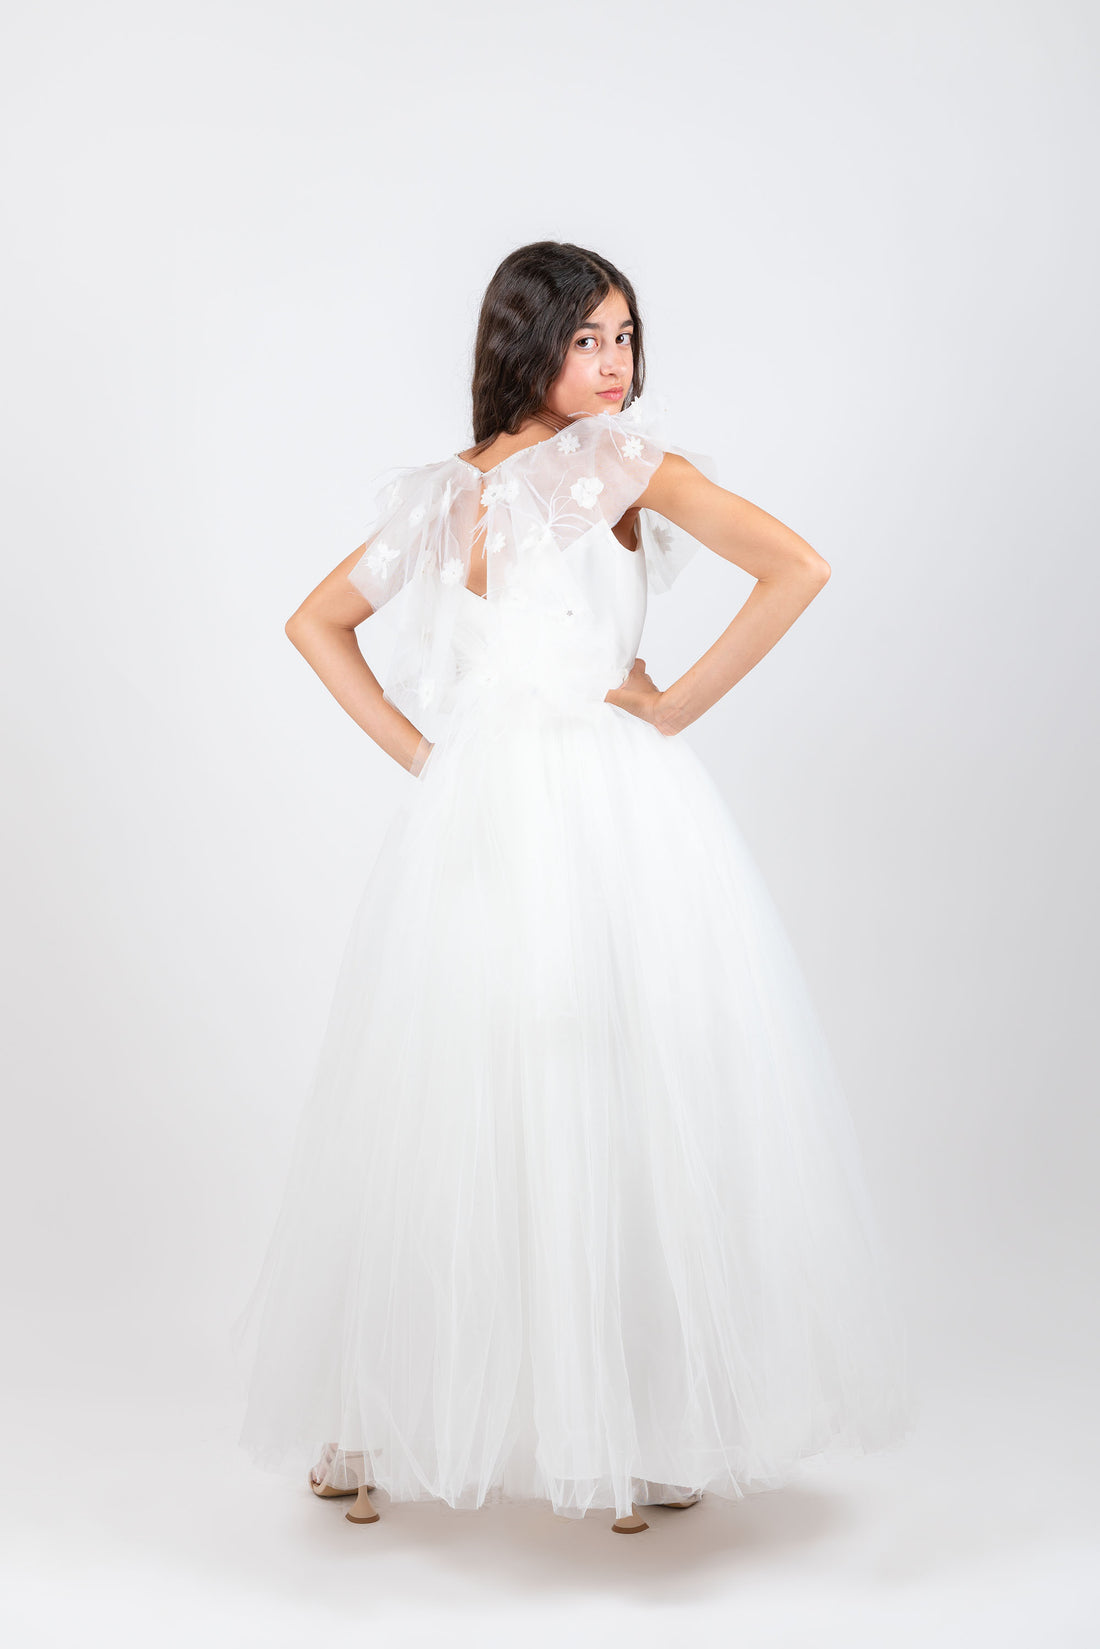 Lovely White Girl Dress 3806